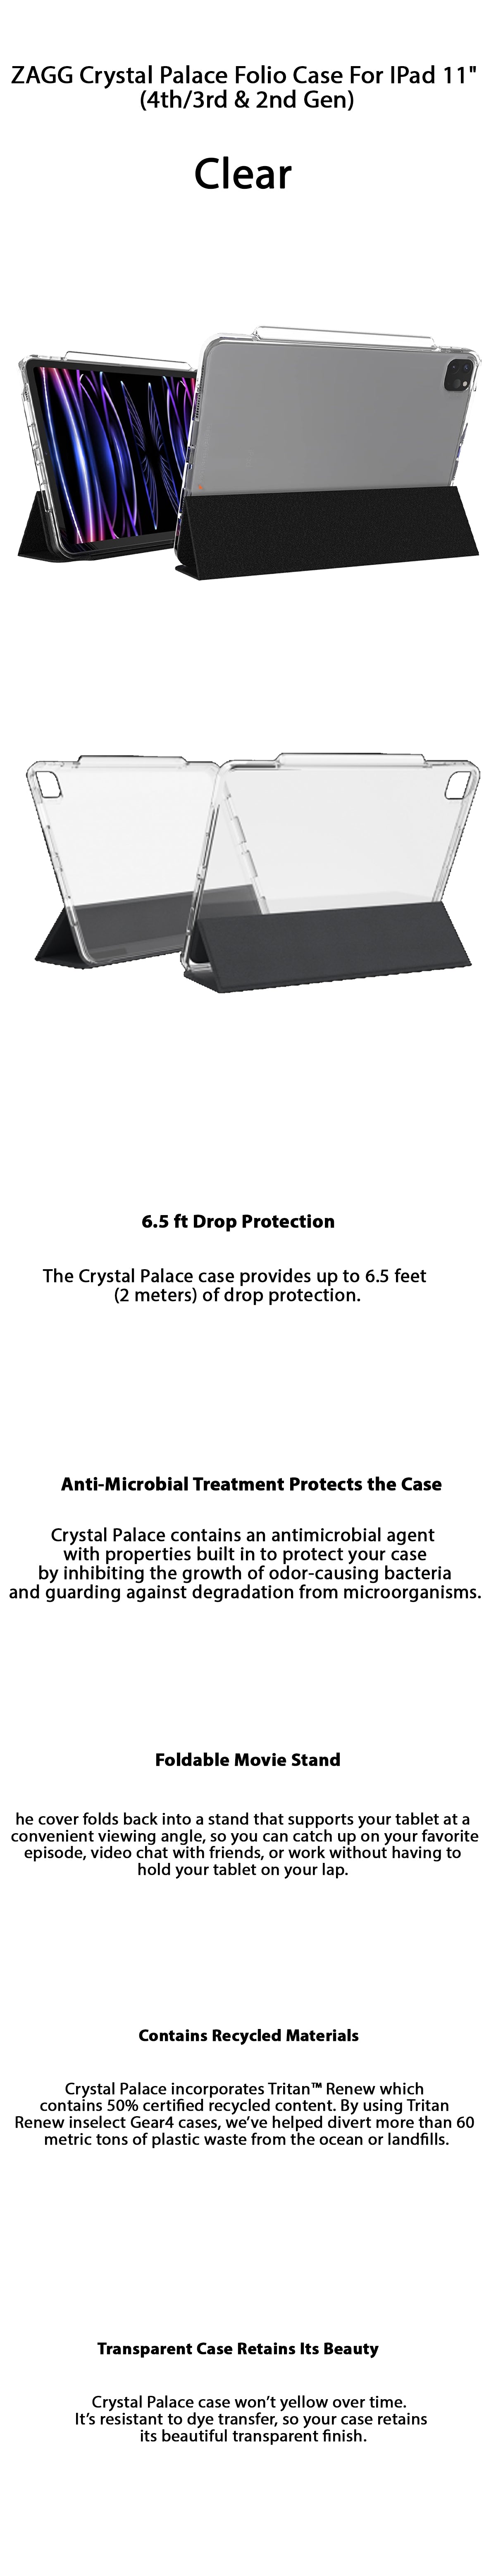 ZAGG Crystal Palace Folio Case For IPad Pro 11